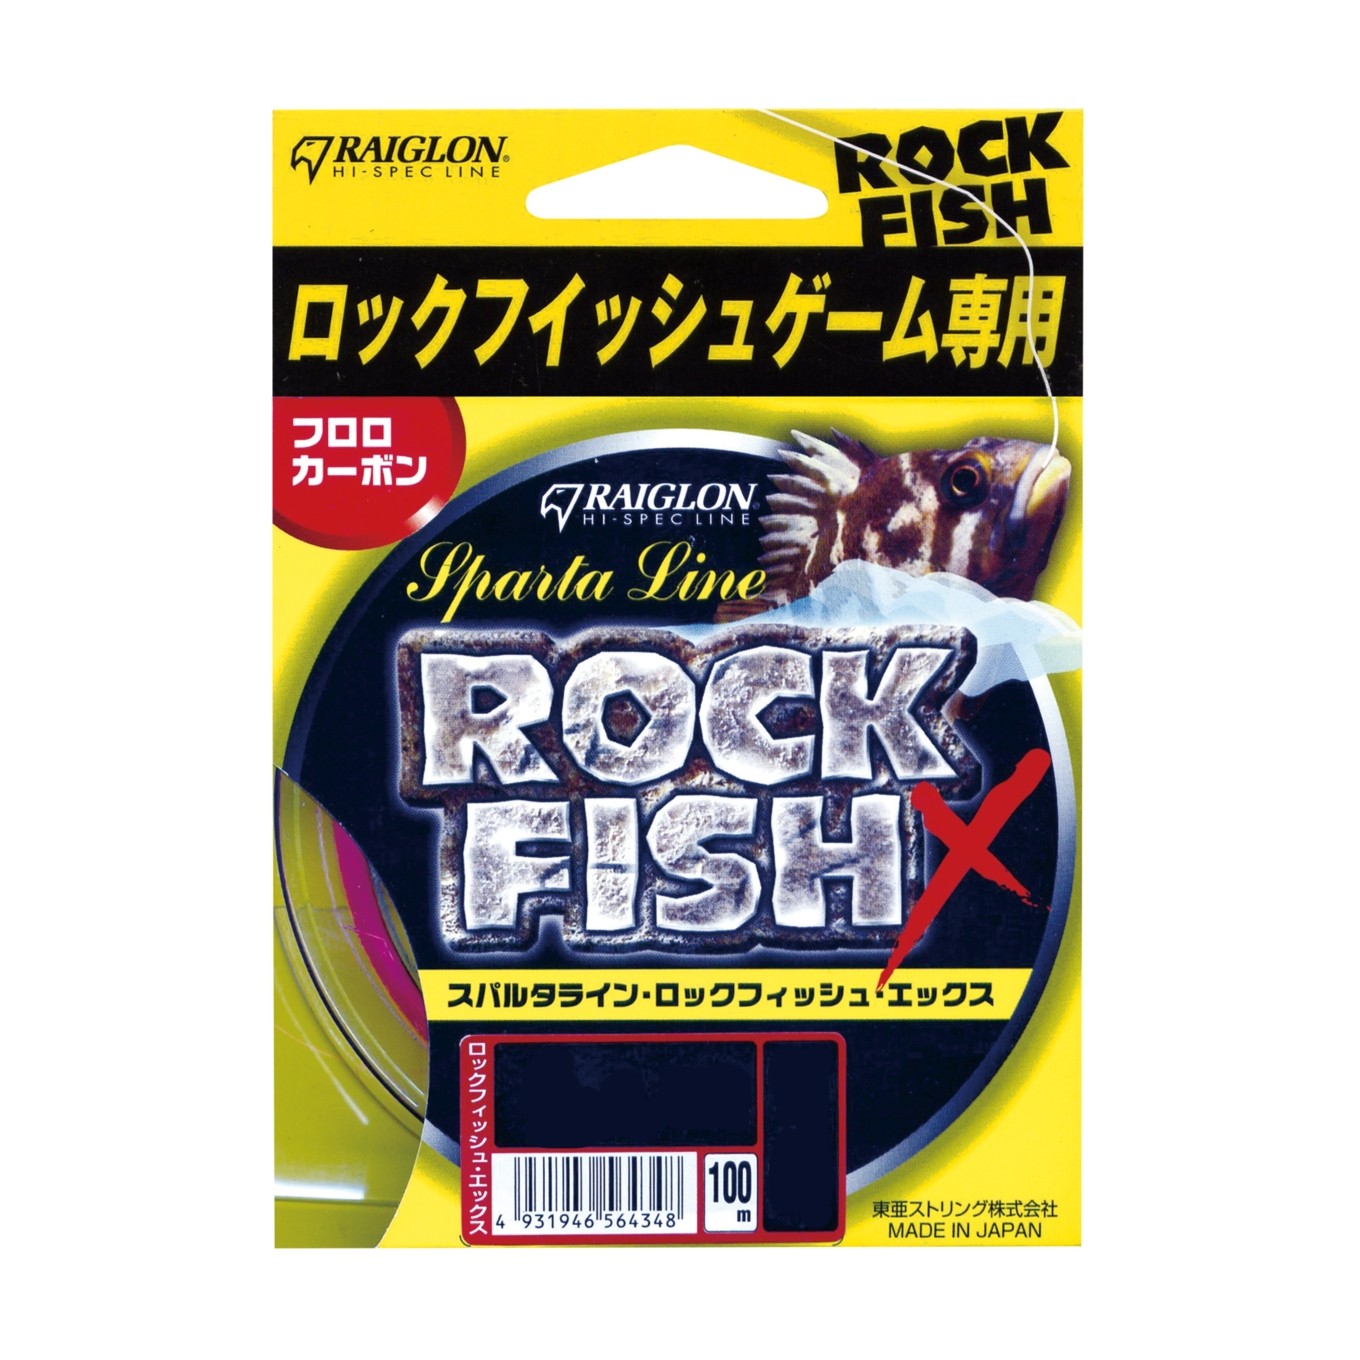 Леска Raiglon Rock fish x  fluorocarbon fluo pink 100м 0,8/0,148мм - фото 1